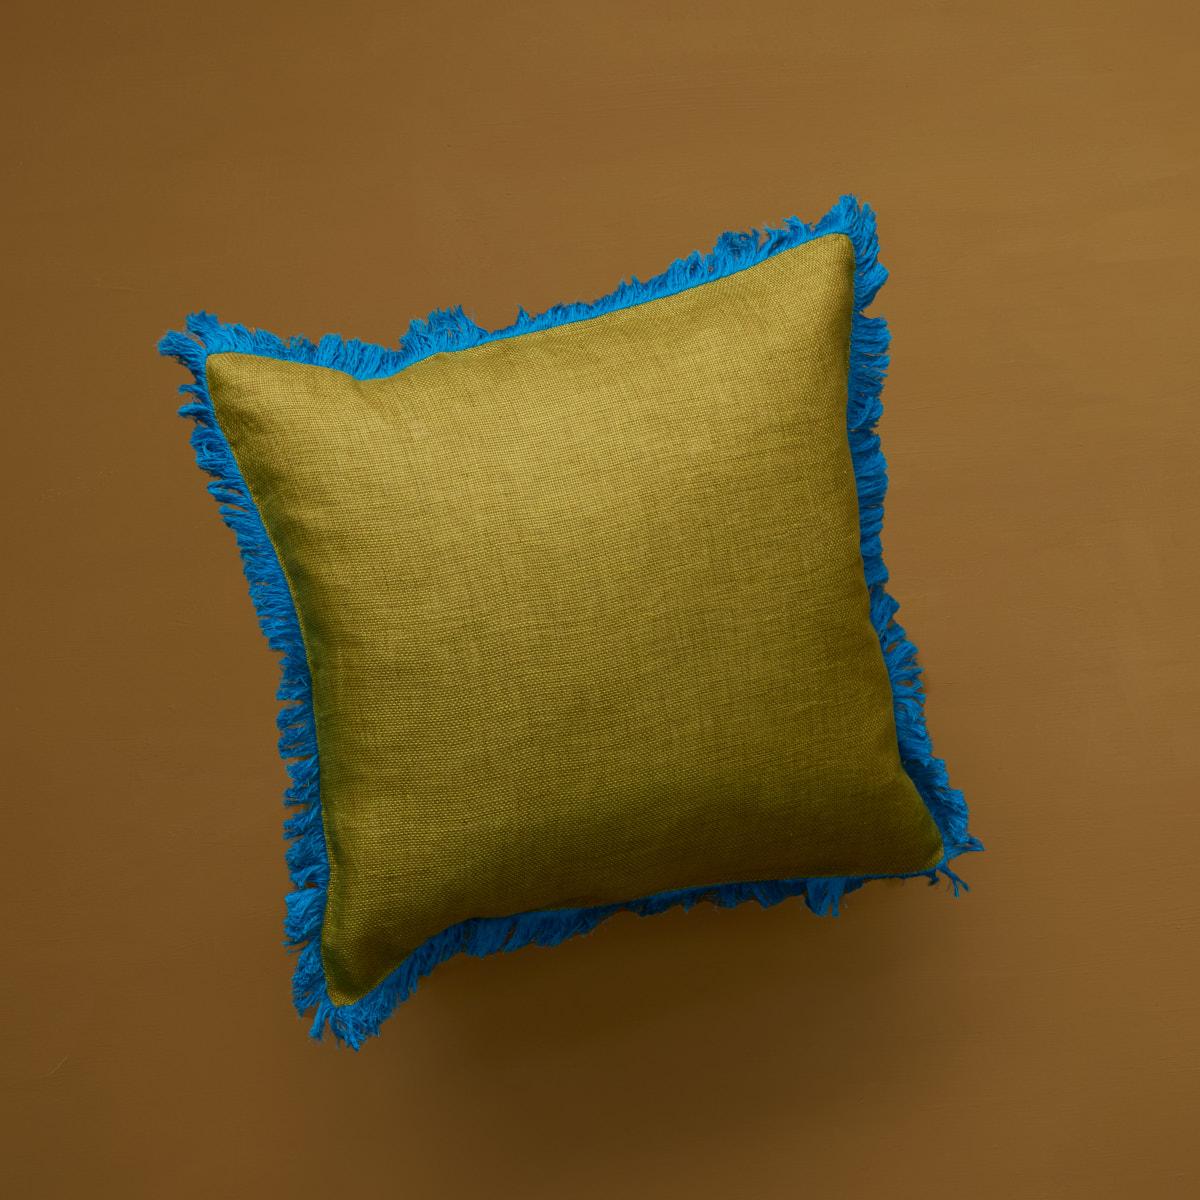 Ajoutez une touche de couleur à votre chambre avec ce coussin dans un éclatant dégradé de vert et de bleu. Le tissu en coton Kadhi est terminé par une frange d'herbe bleue saisissante, entièrement réalisée à la main. Livré sans garniture, les